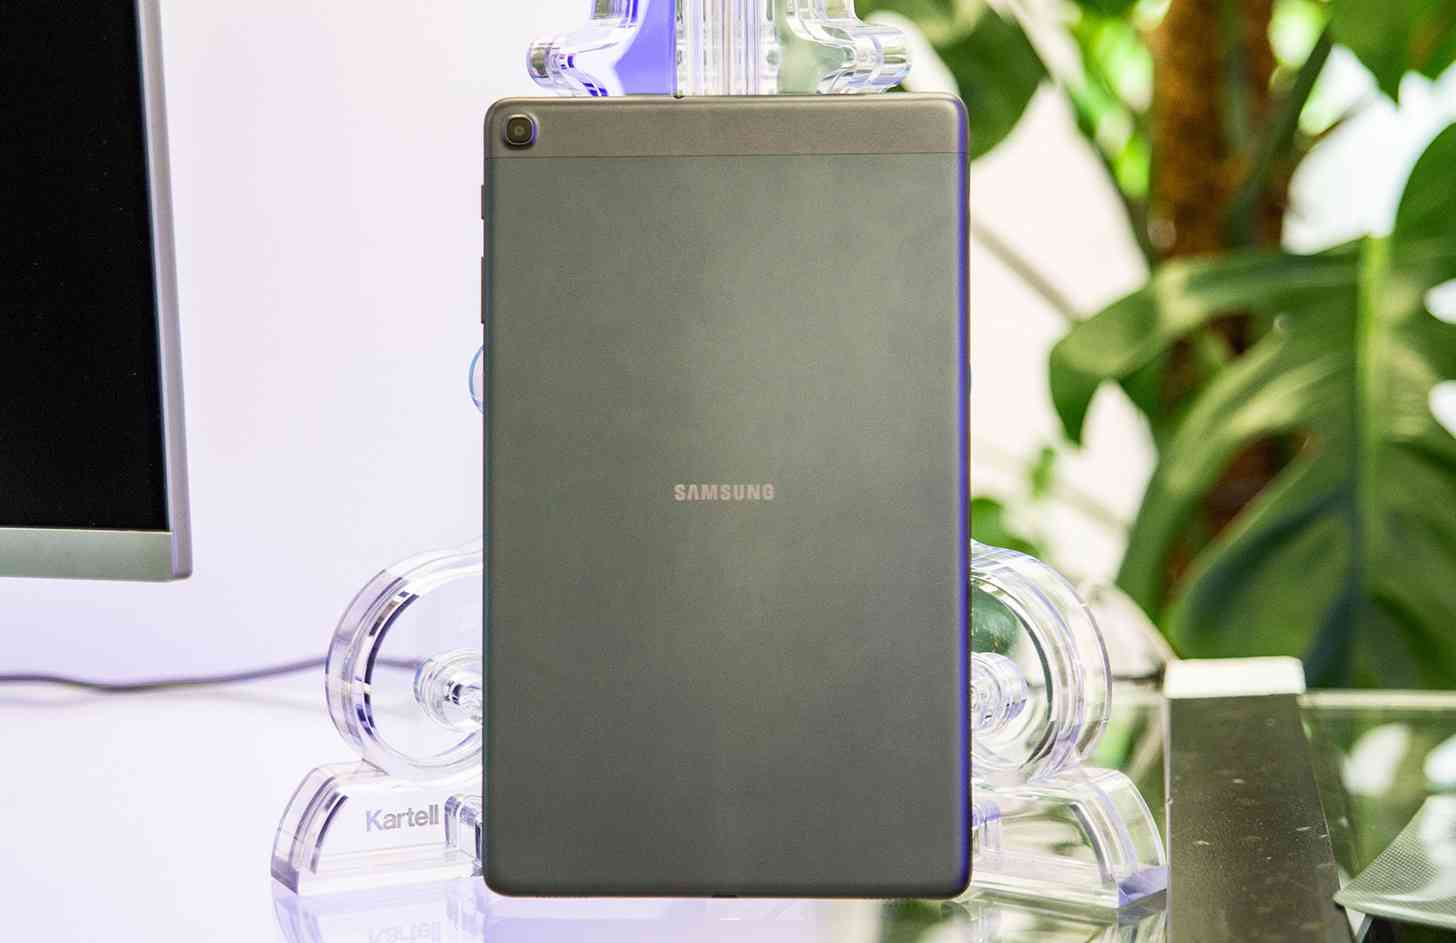 Samsung Galaxy Tab A 10.1 (2019) rear